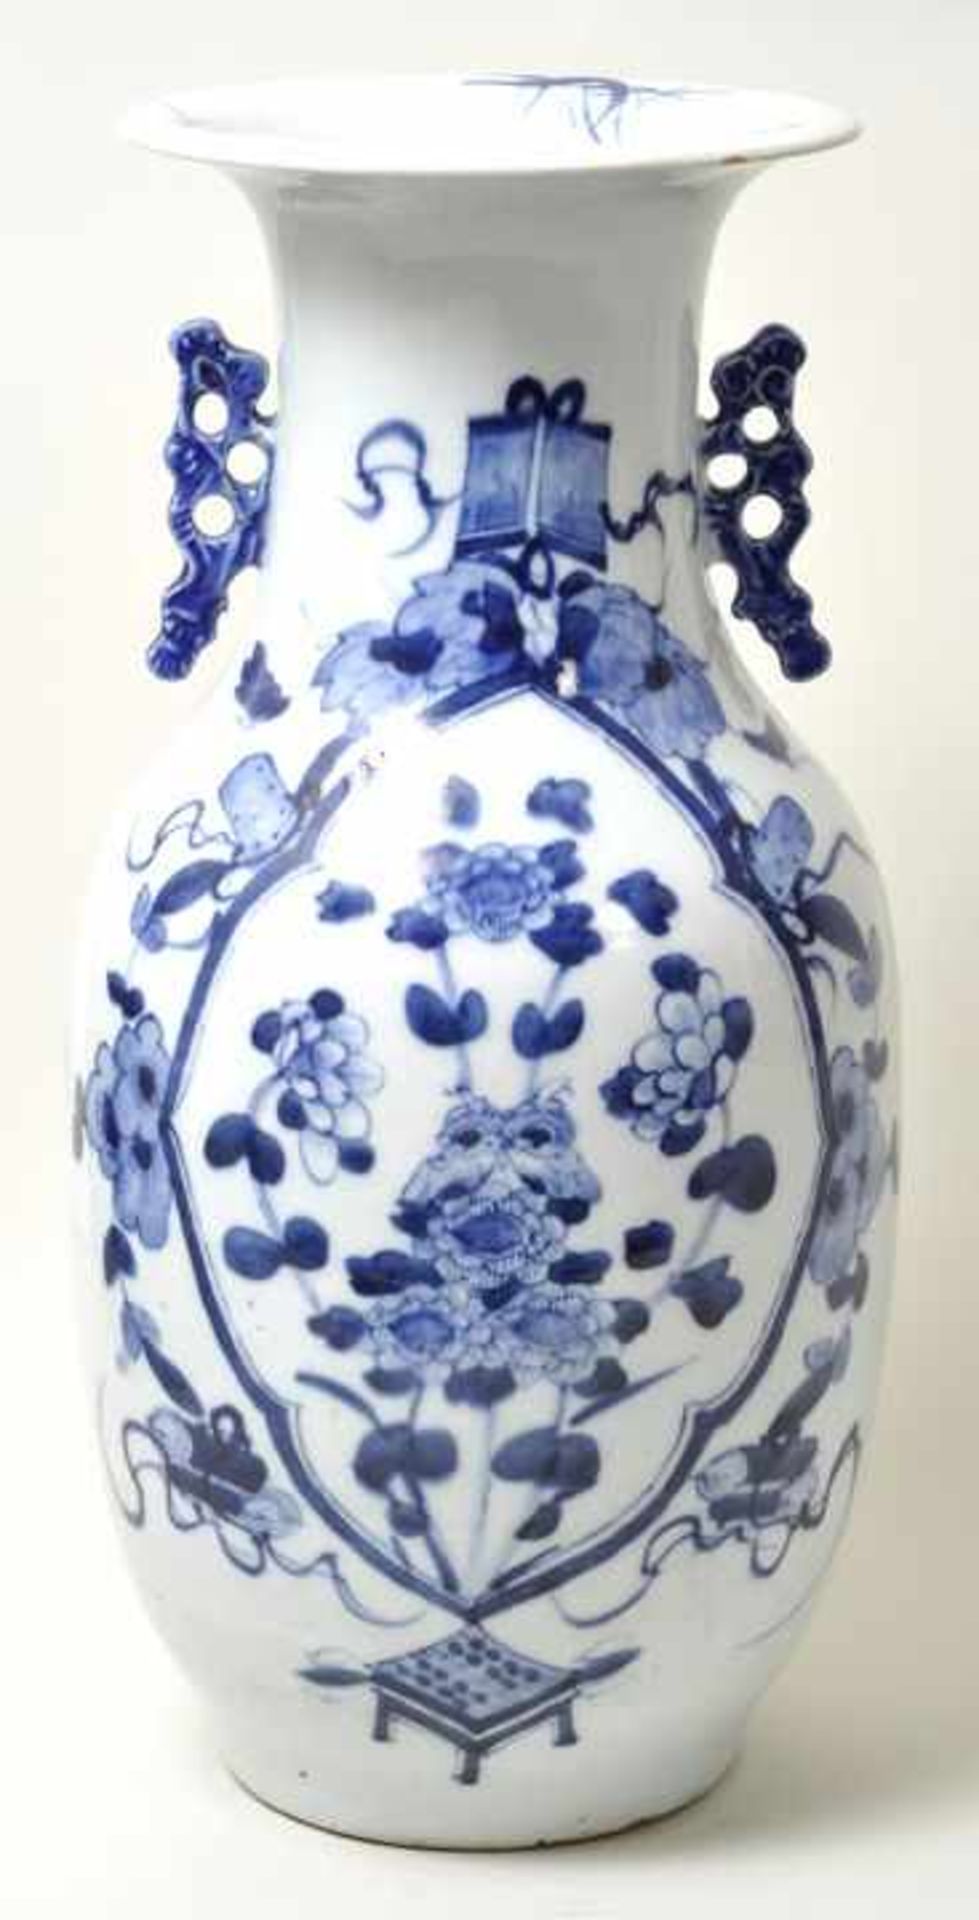 Vase in Rouleauform, China, 17. Jh. Porzellan, dickwandiger Scherben, in Kobaltblau auf leicht